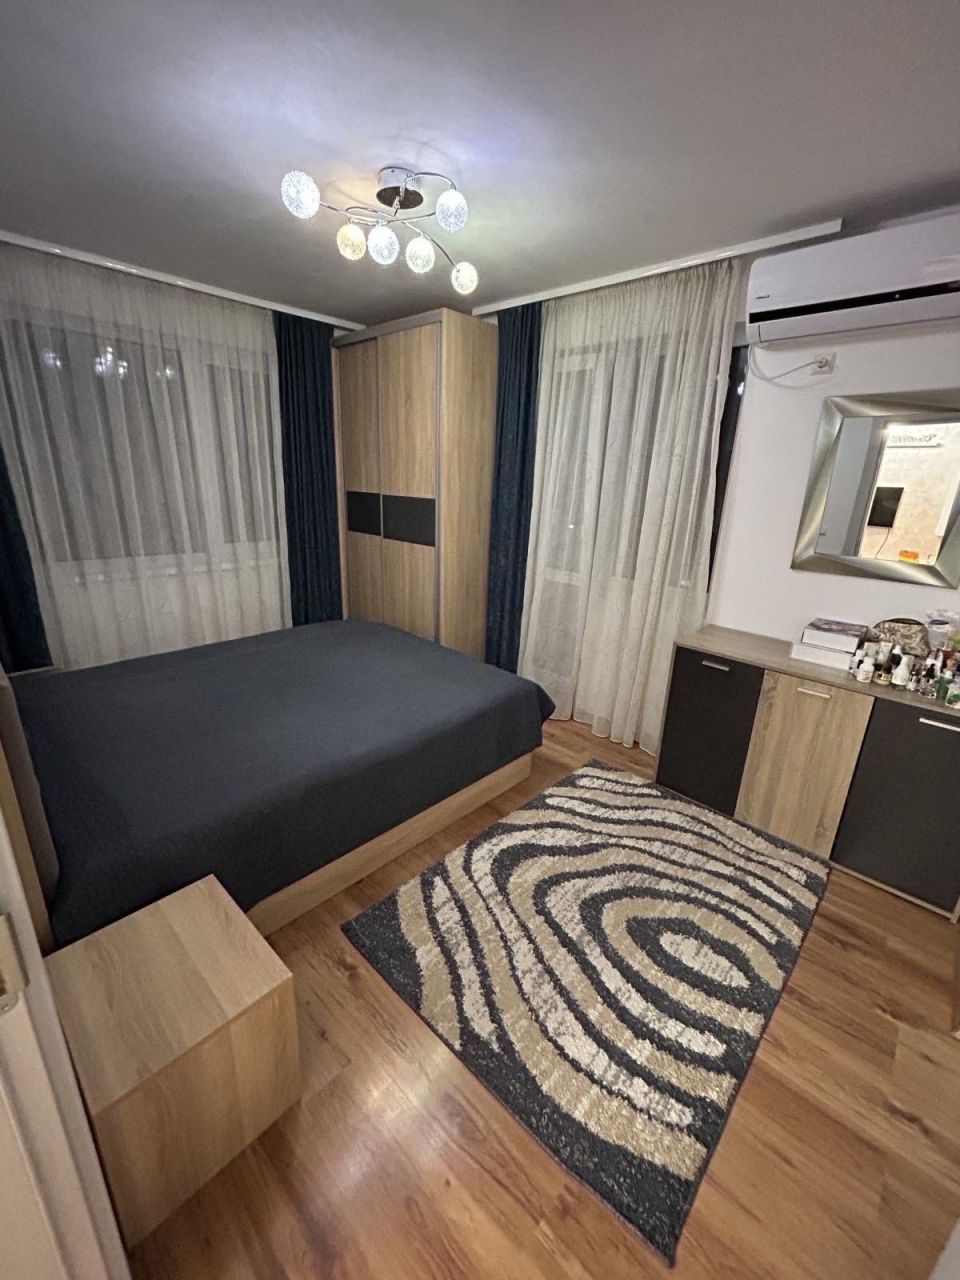 Apartment in Pomorie, Bulgaria, 110 m² - picture 1